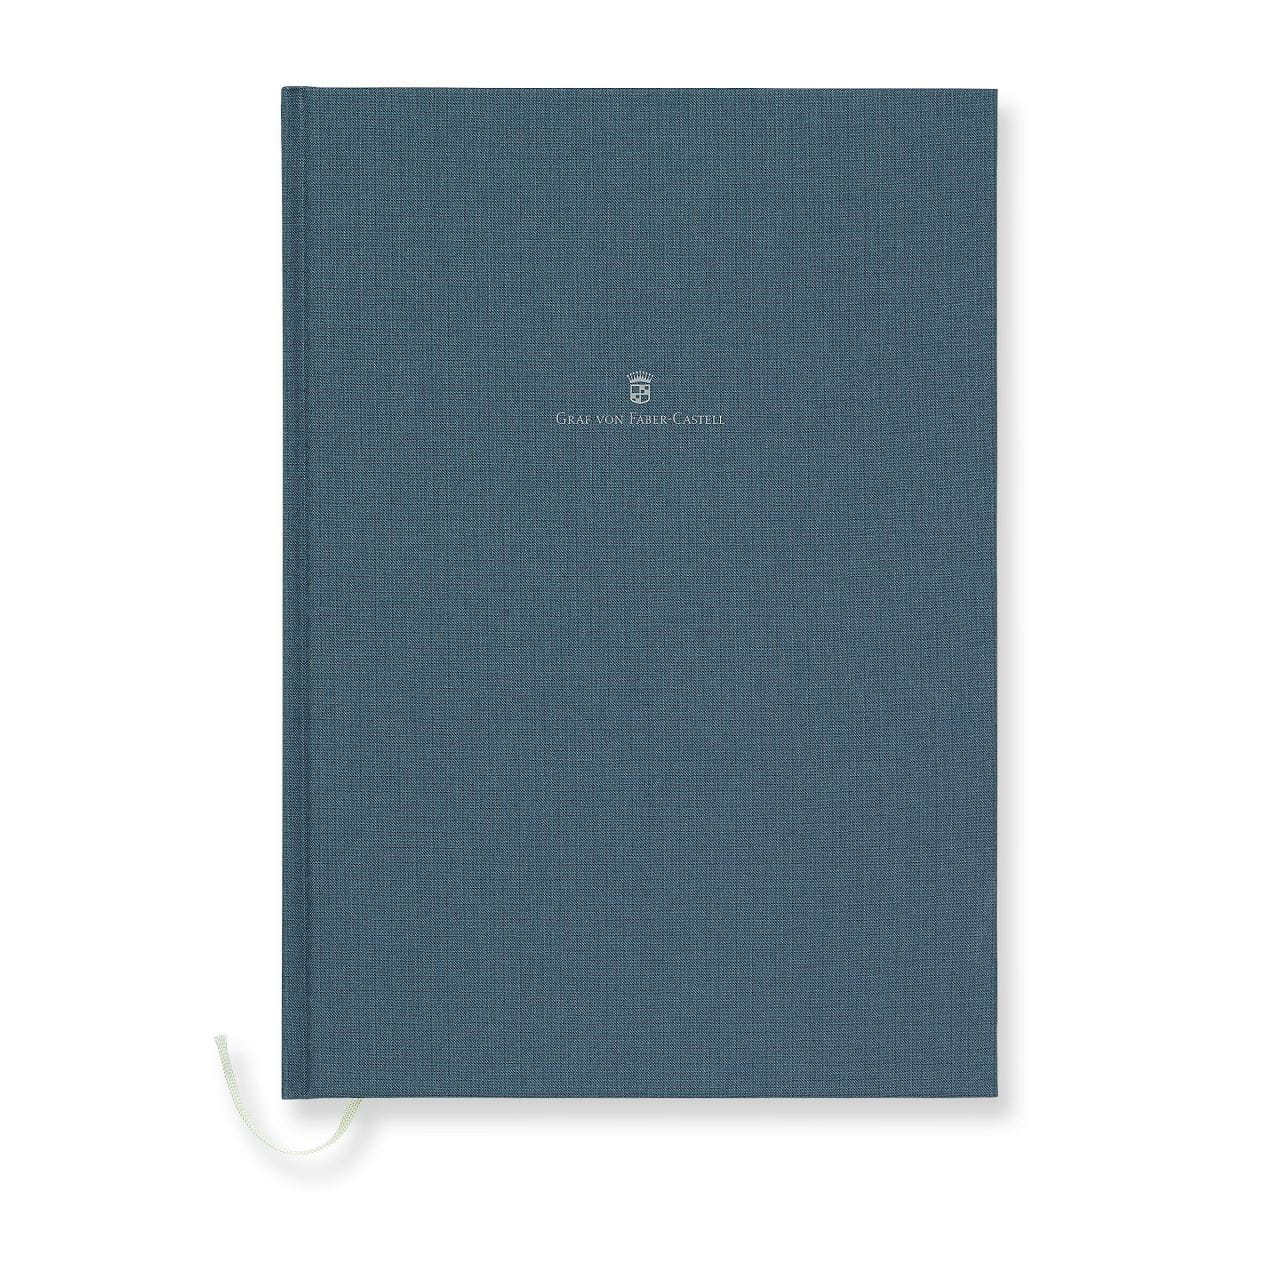 Graf-von-Faber-Castell - Caderno com capa de linho de tamanho A4, Azul